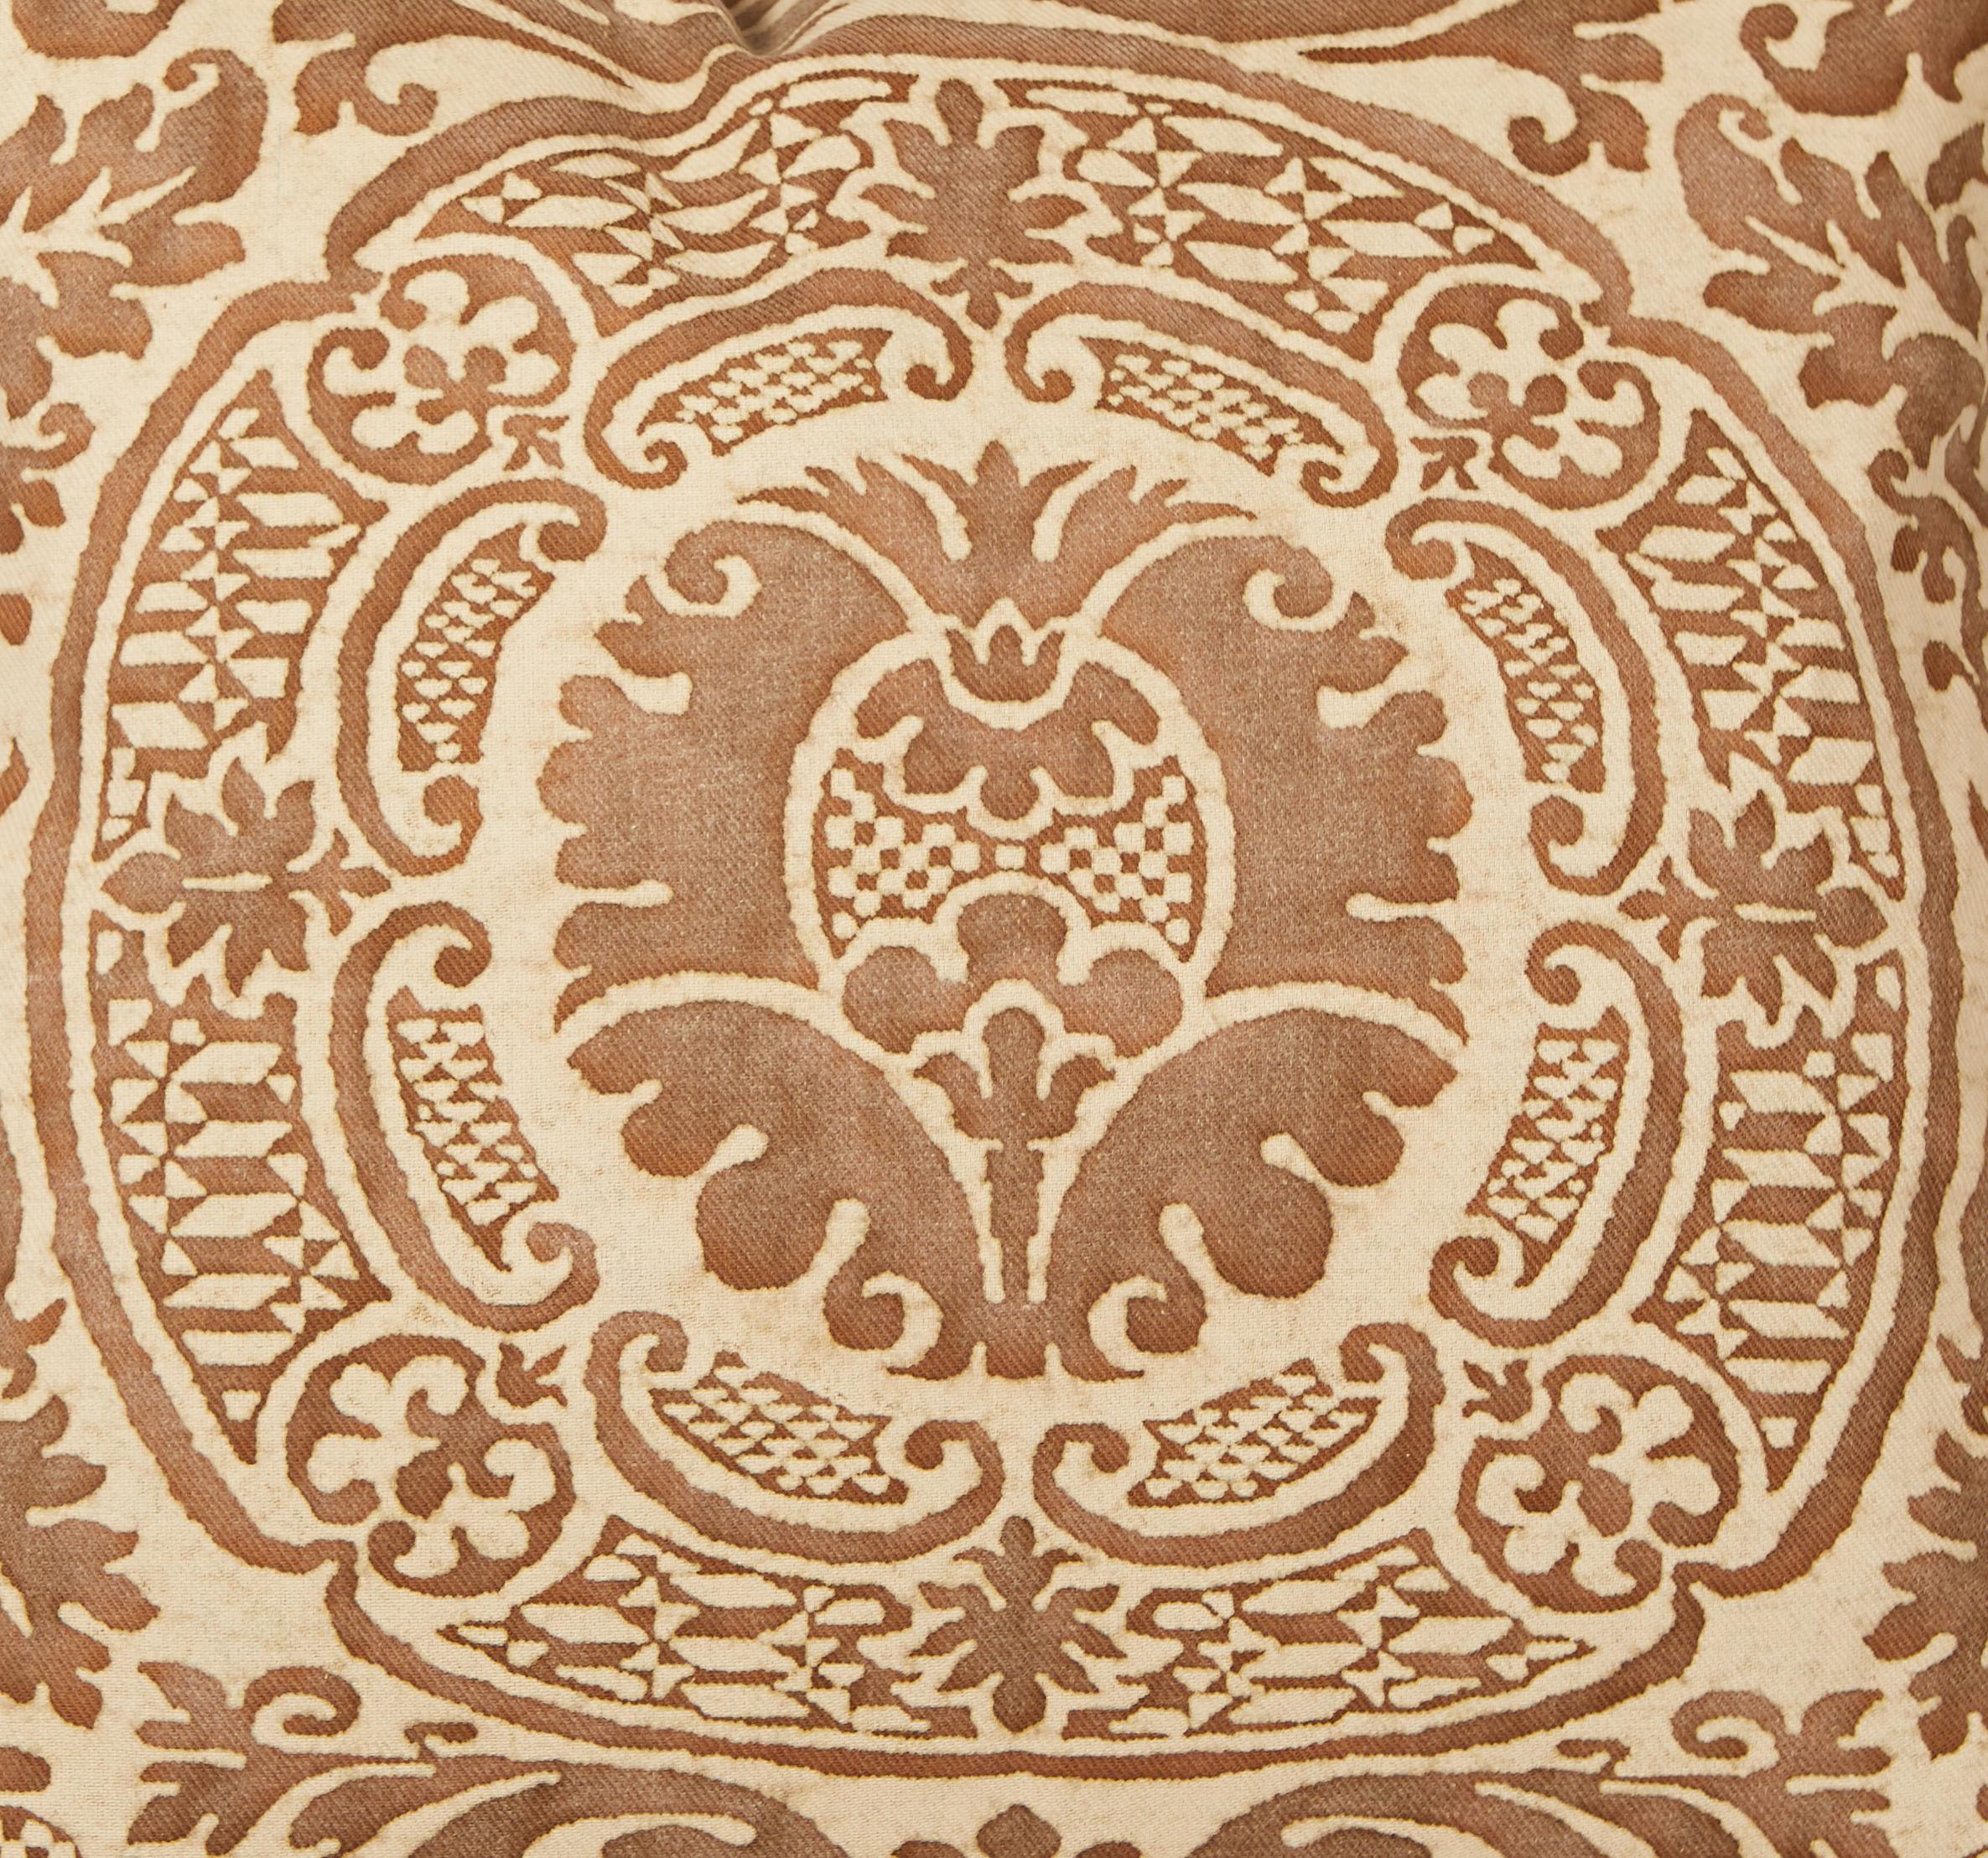 Une paire de coussins en tissu de Fortuny dans le motif Orsini. Le motif Orsini, qui présente une magnifique palette de couleurs marron et beige, est un motif italien du XVIIe siècle qui doit son nom à l'une des familles princières les plus